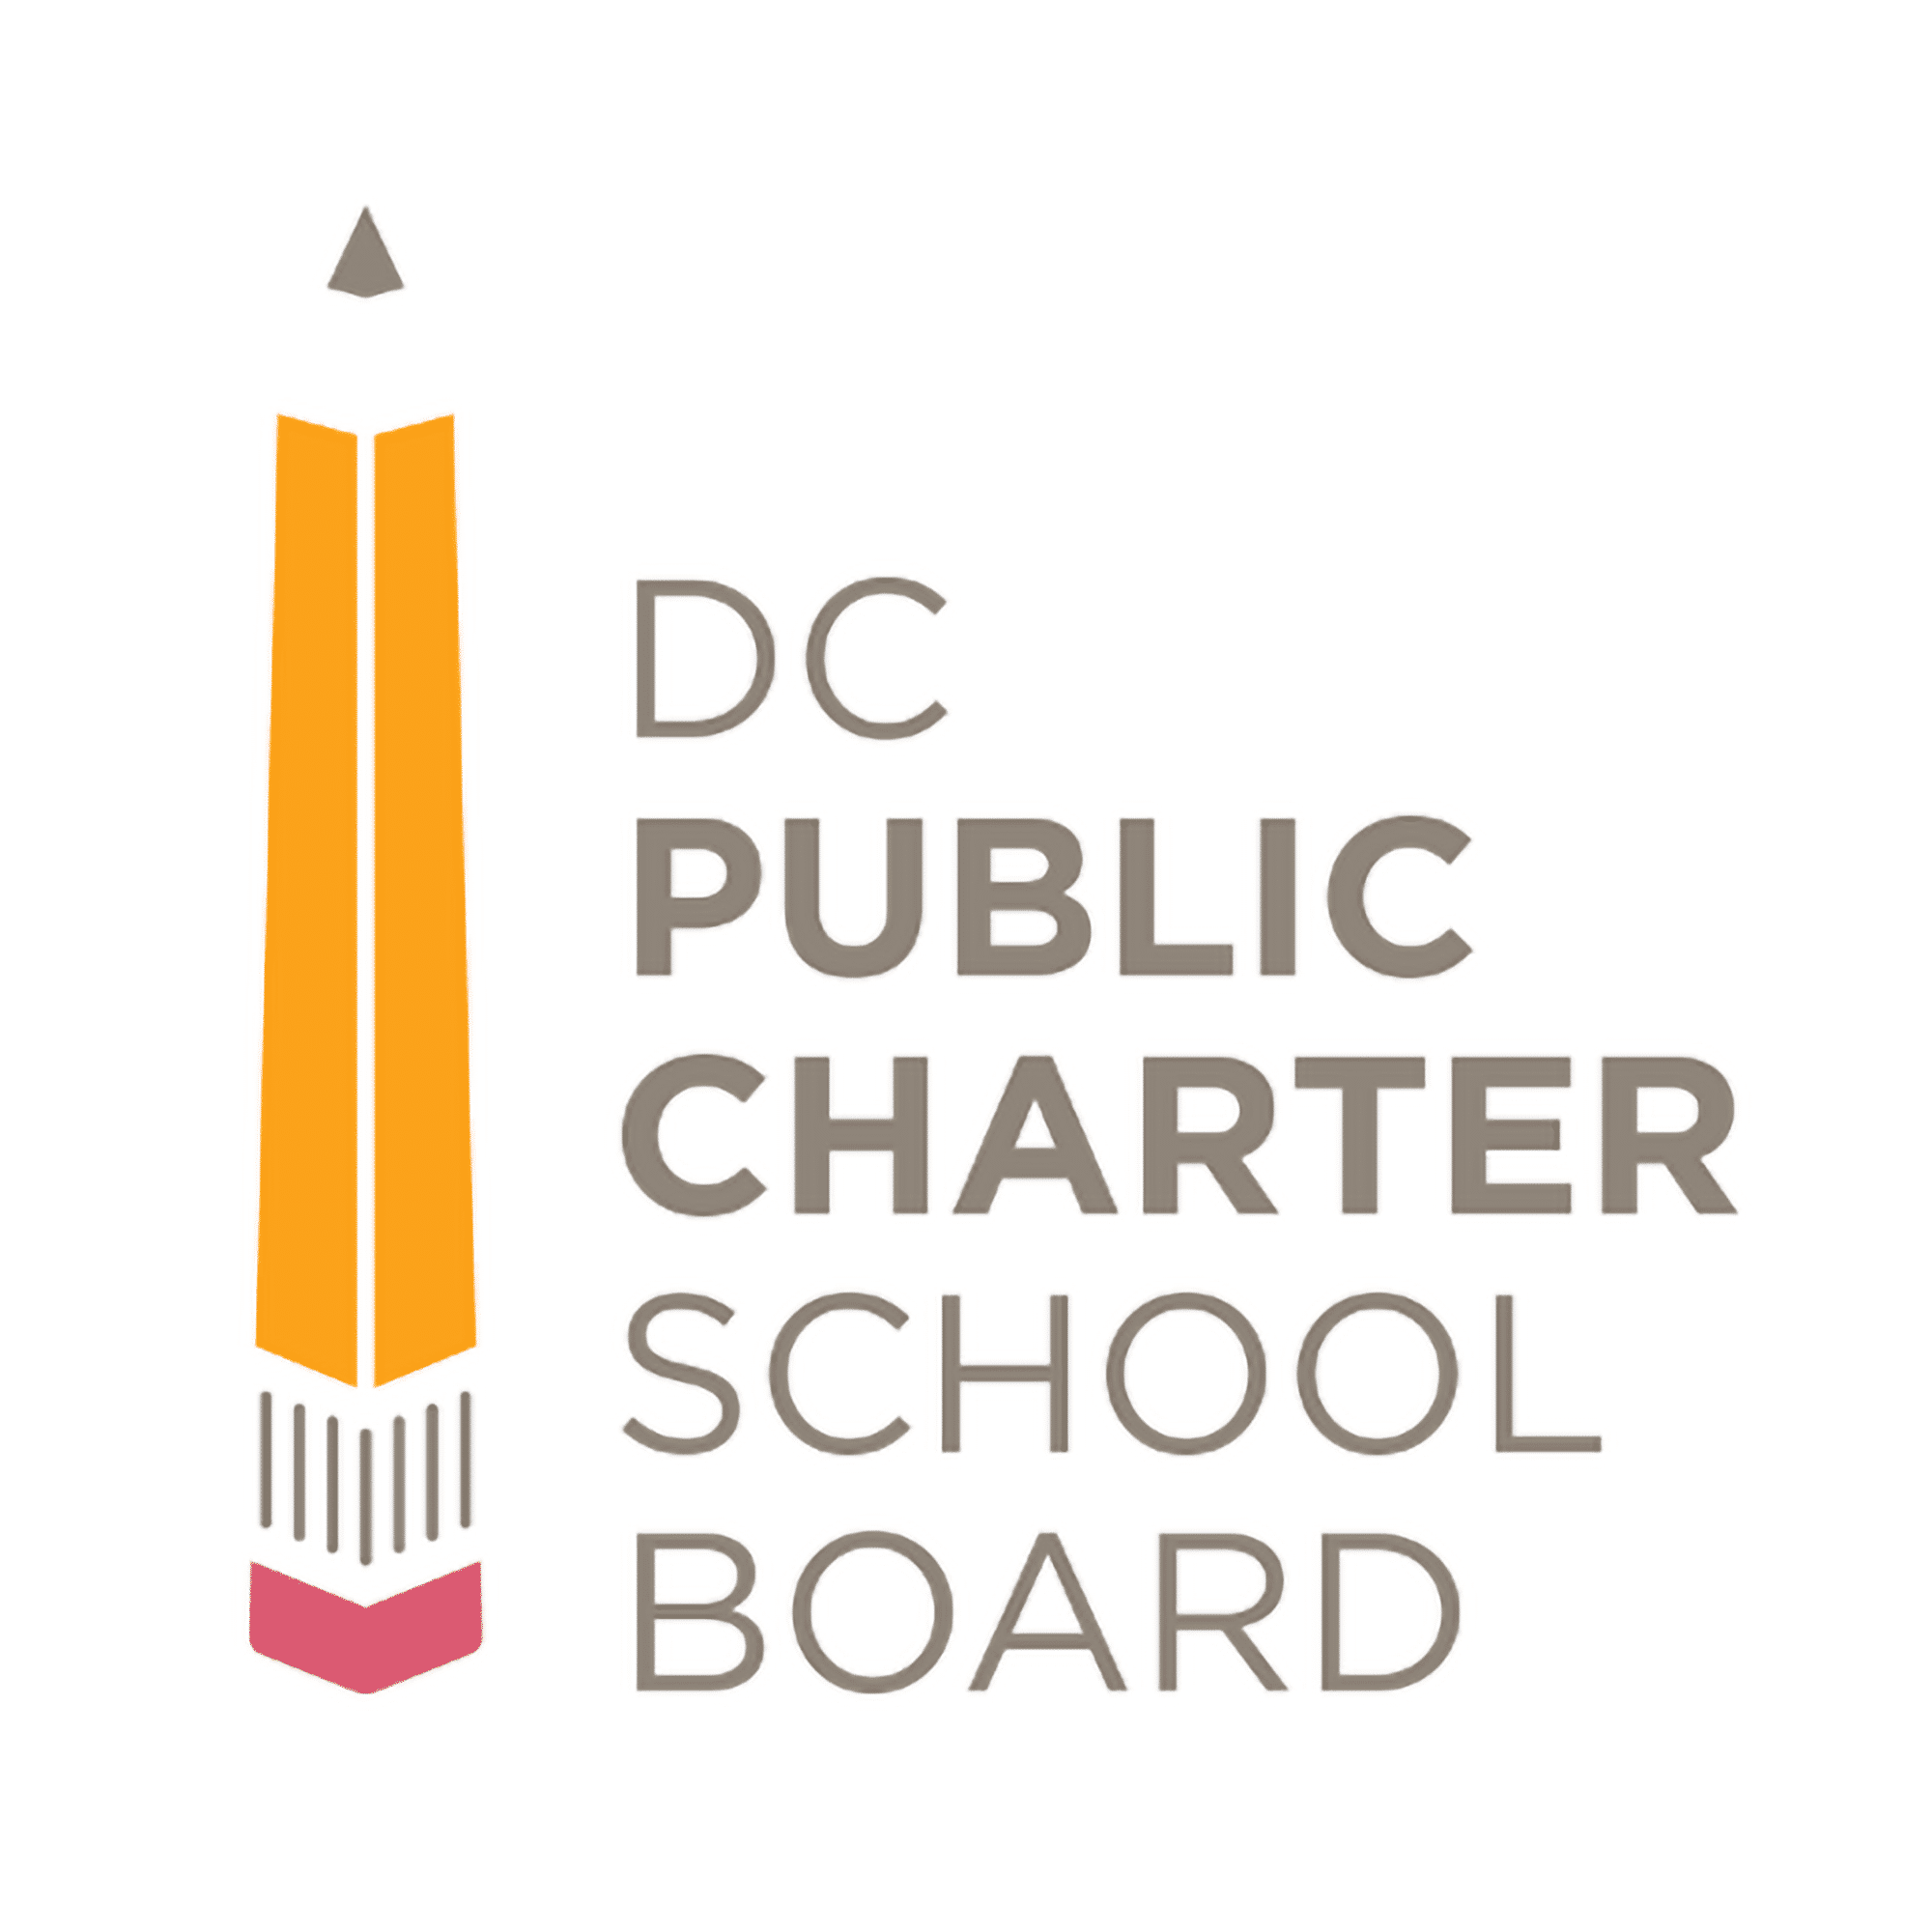 DC Public Charter School Board